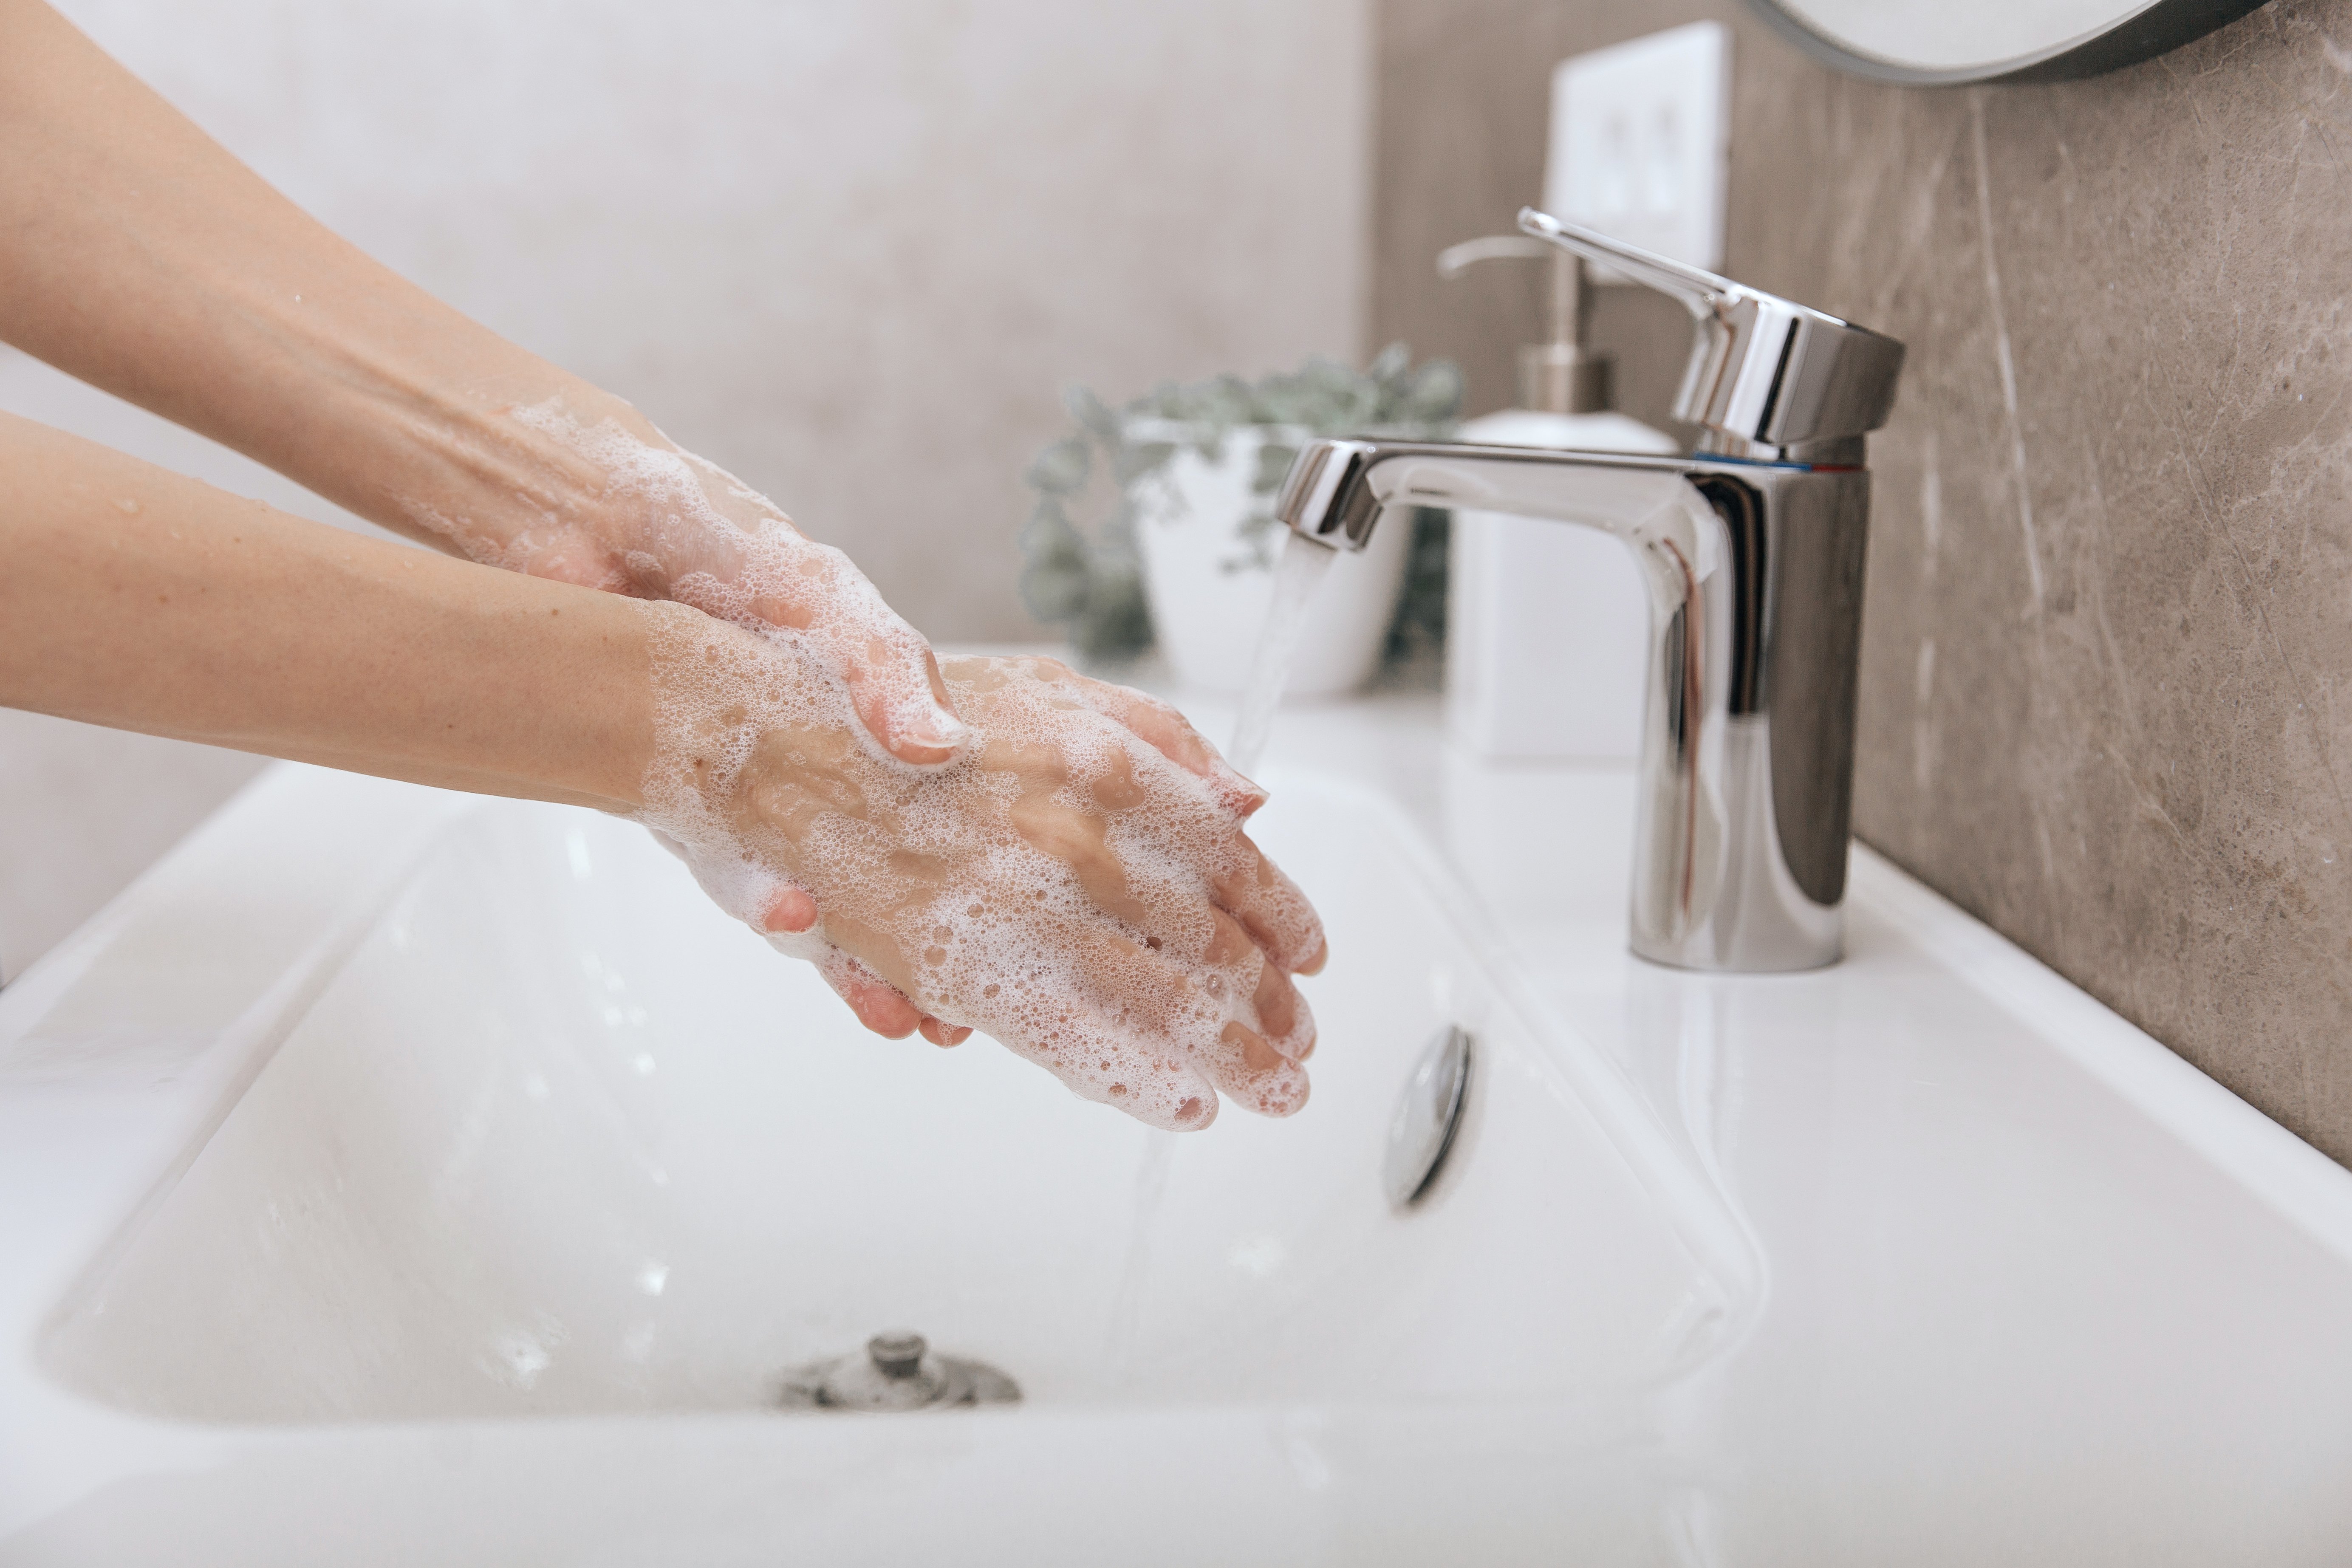 Κύρια σημεία που ‘προσεγγίζουν’ τα μικρόβια στο μπάνιο σου και πρέπει να προσεχείς!